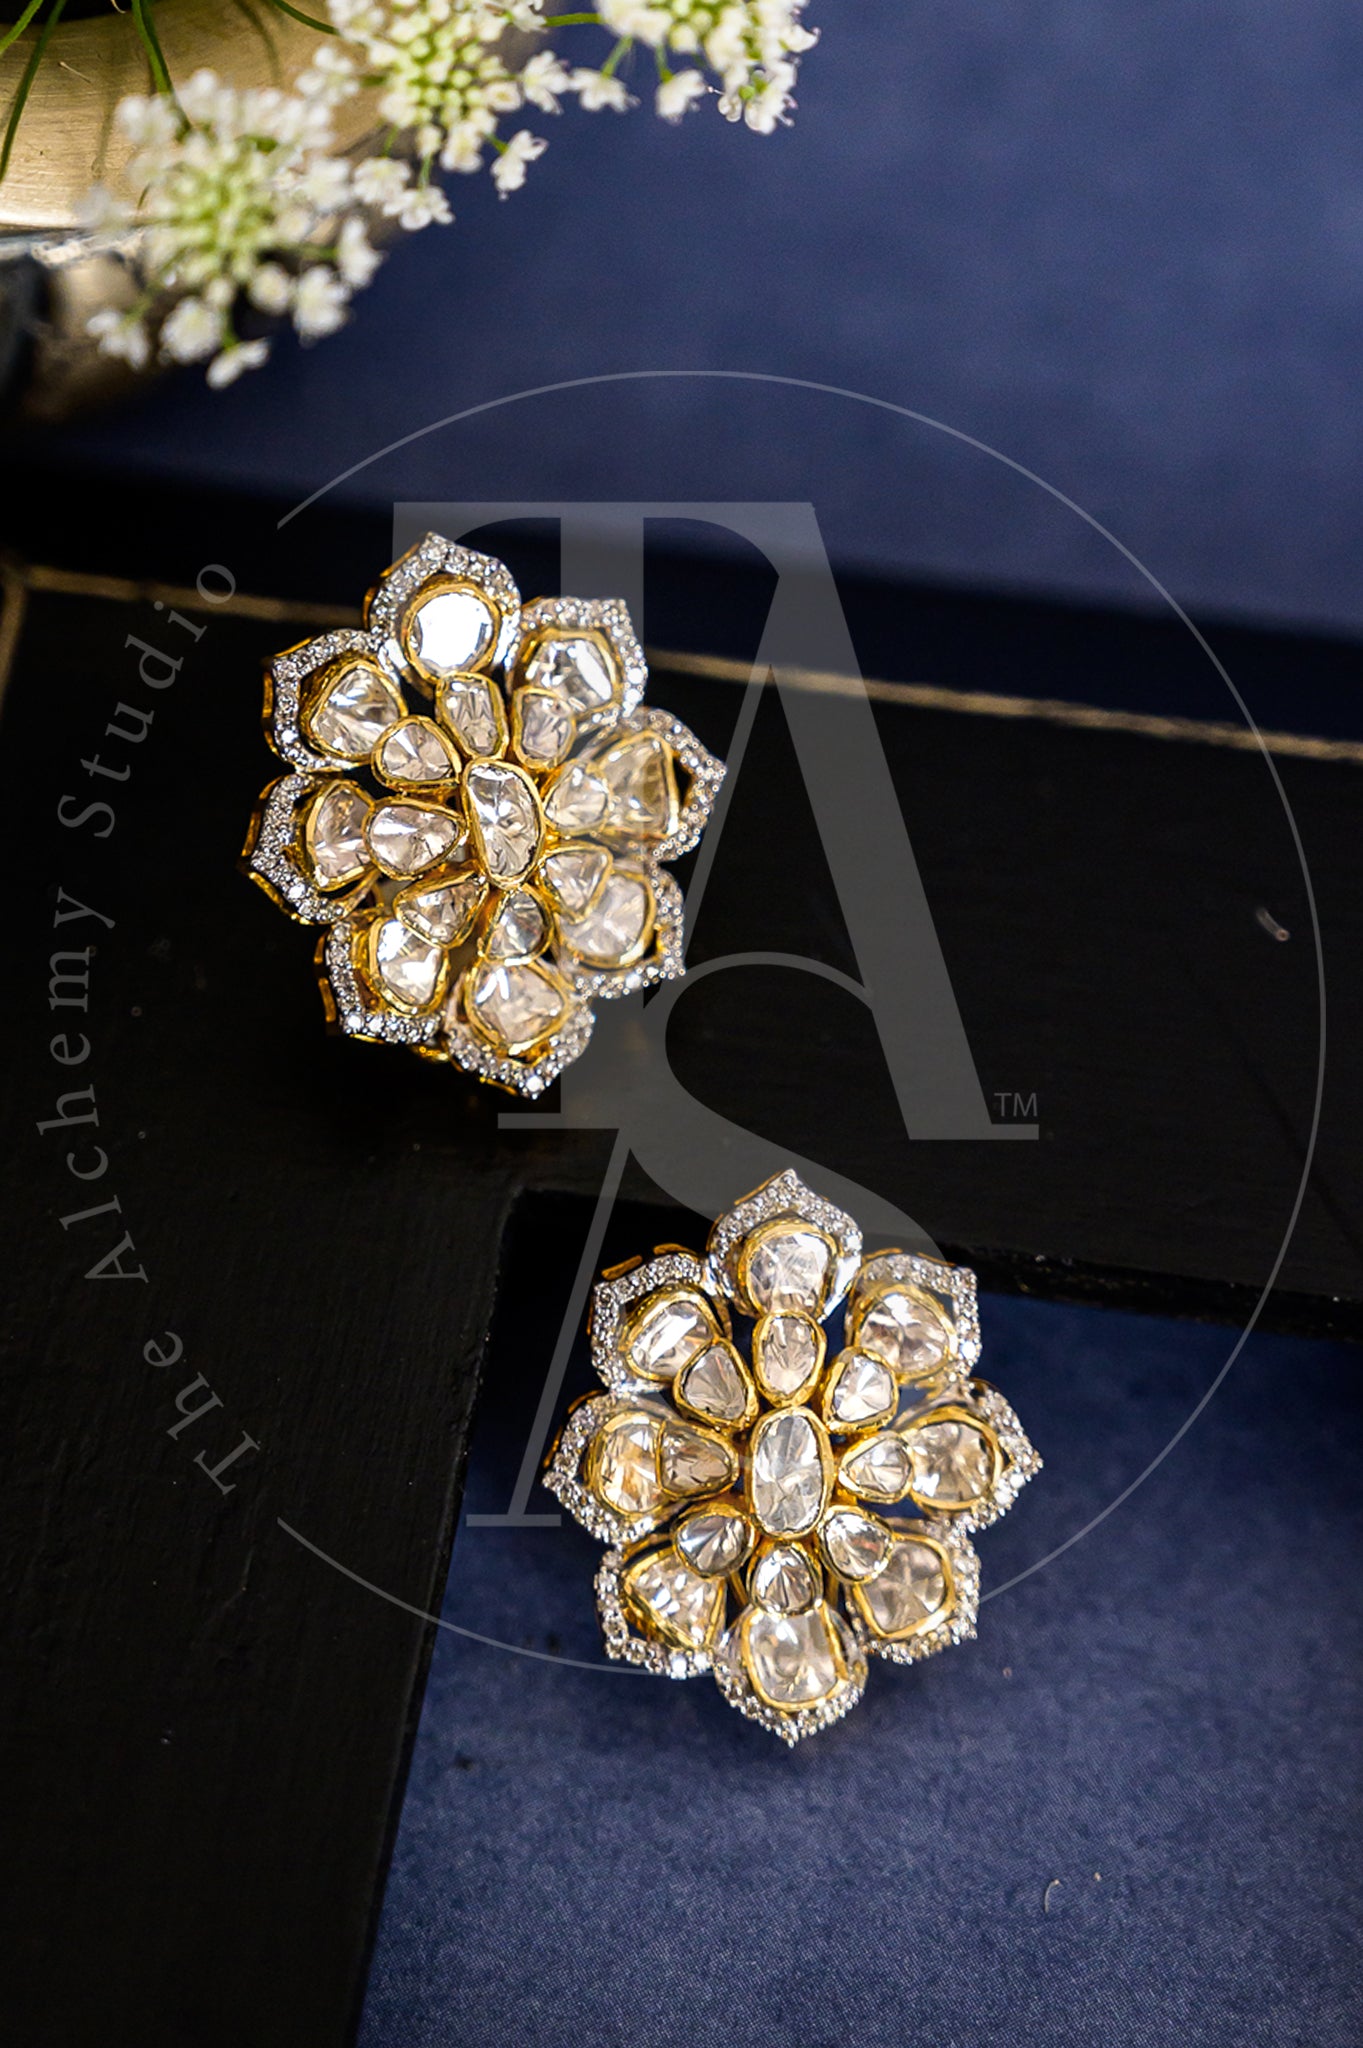 14KT White Gold Flower Cluster Earrings 0.95 CT. T.W. - Spence Diamonds